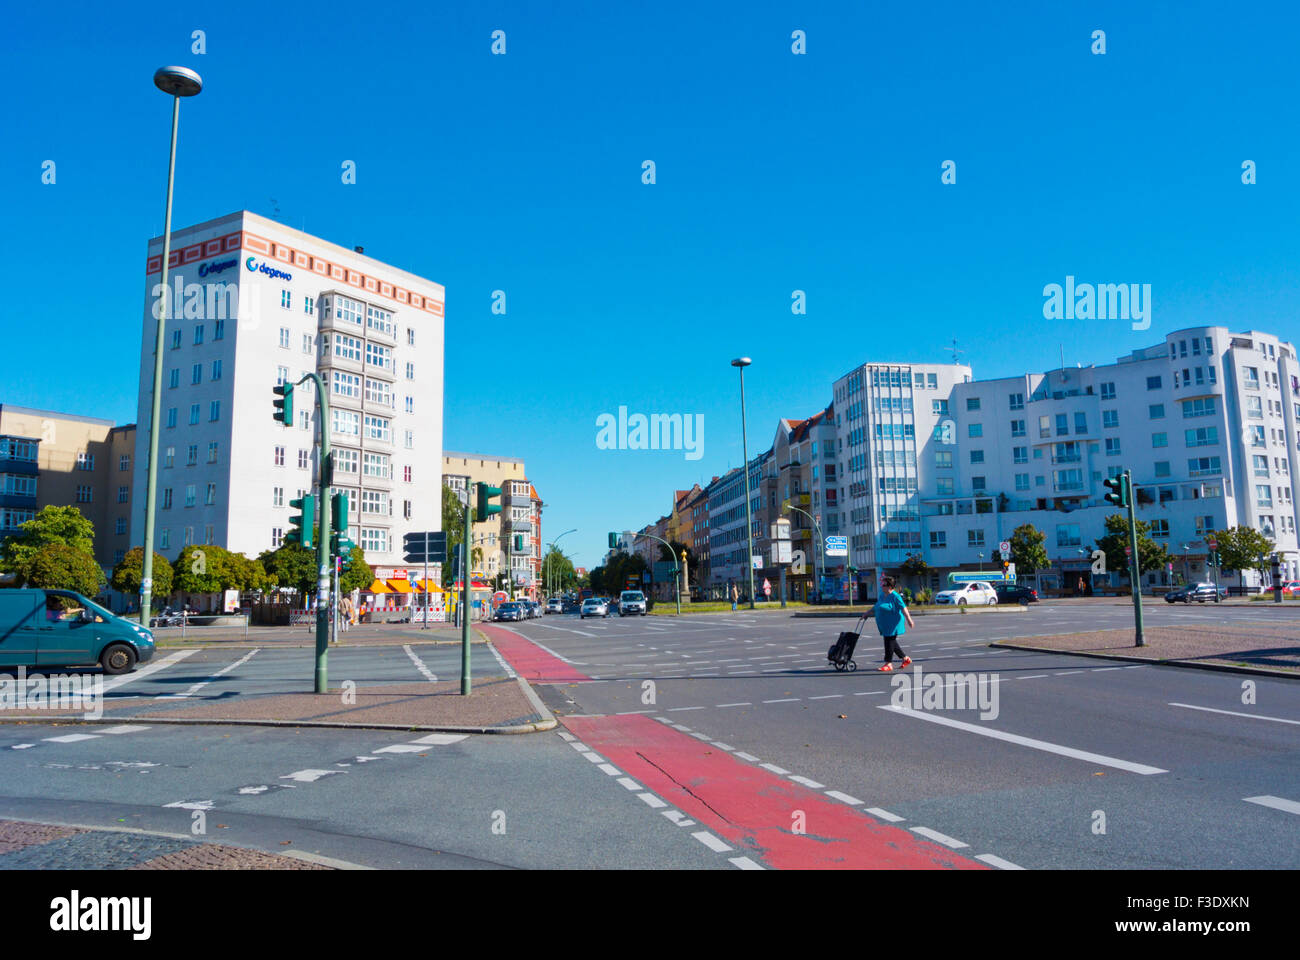 Innsbrucker Platz, Bezirk Schöneberg, Berlin, Deutschland Stockfoto